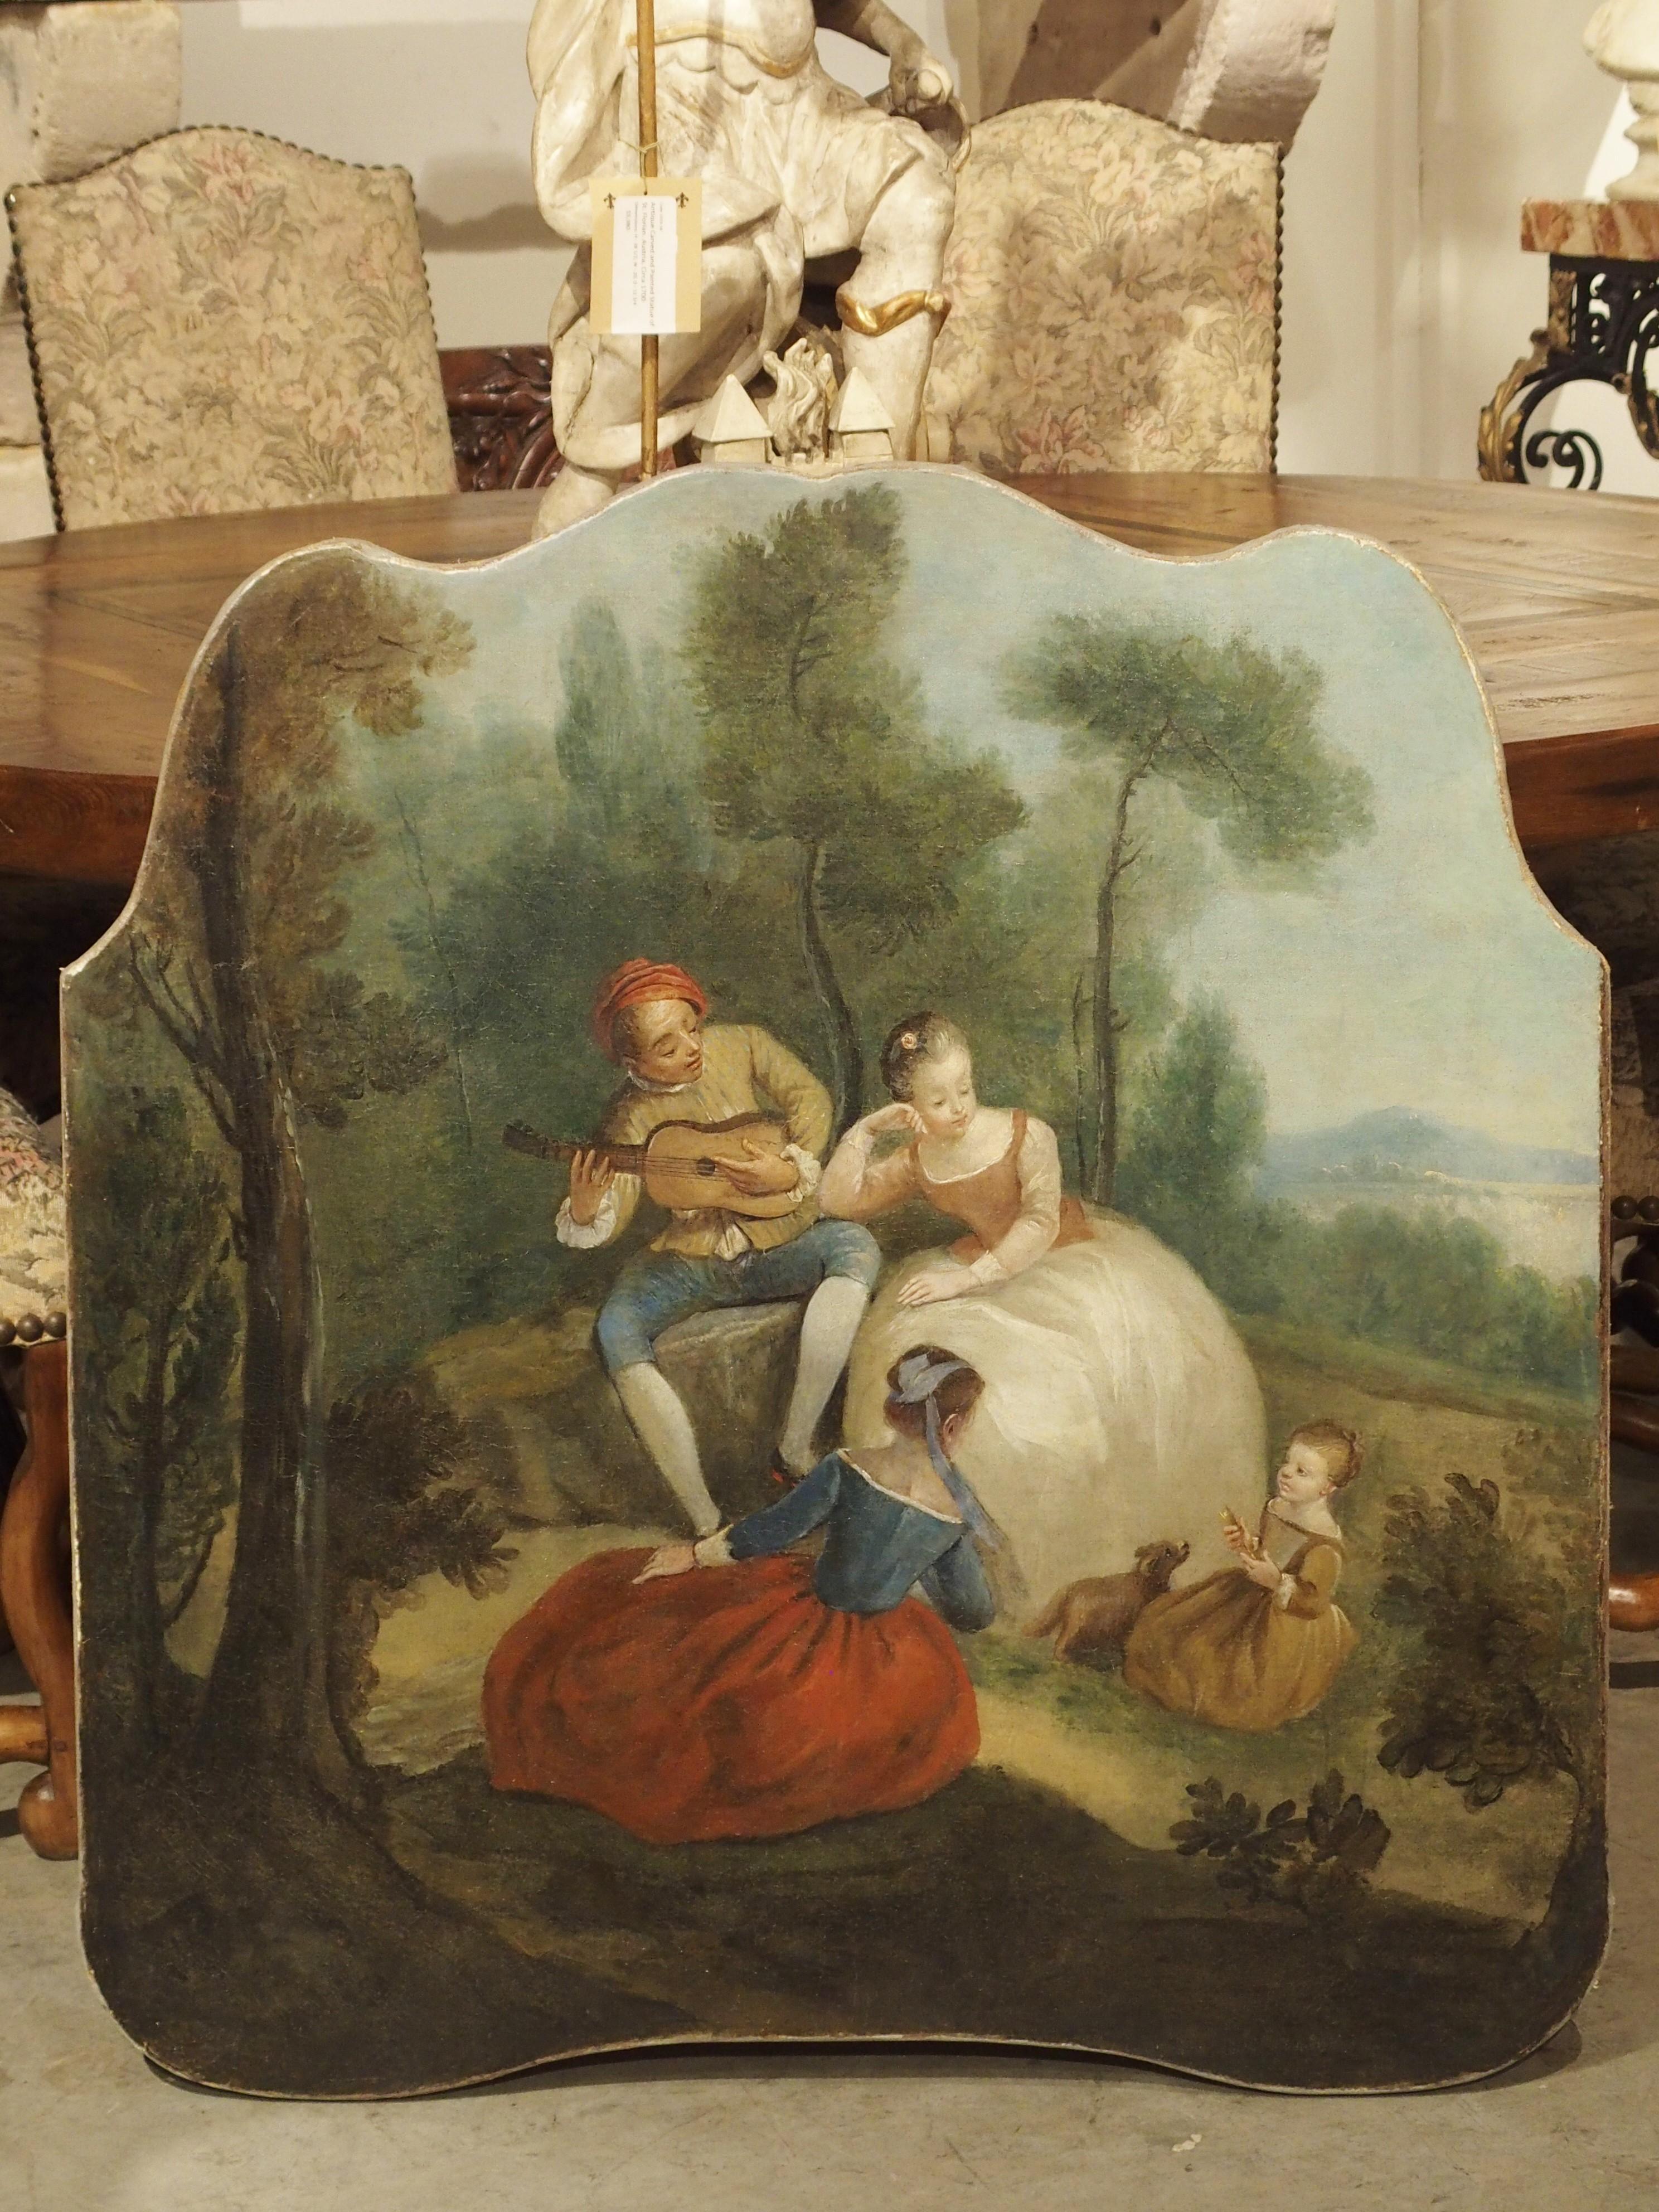 Dieses farbenfrohe und fröhliche Genrebild stammt aus Frankreich, ca. 1770. Genrebilder zeigen Menschen bei alltäglichen Aktivitäten wie Picknicks, Spaziergängen durch einen Park oder romantischen Szenen. Im 17. und 18. Jahrhundert stammten die